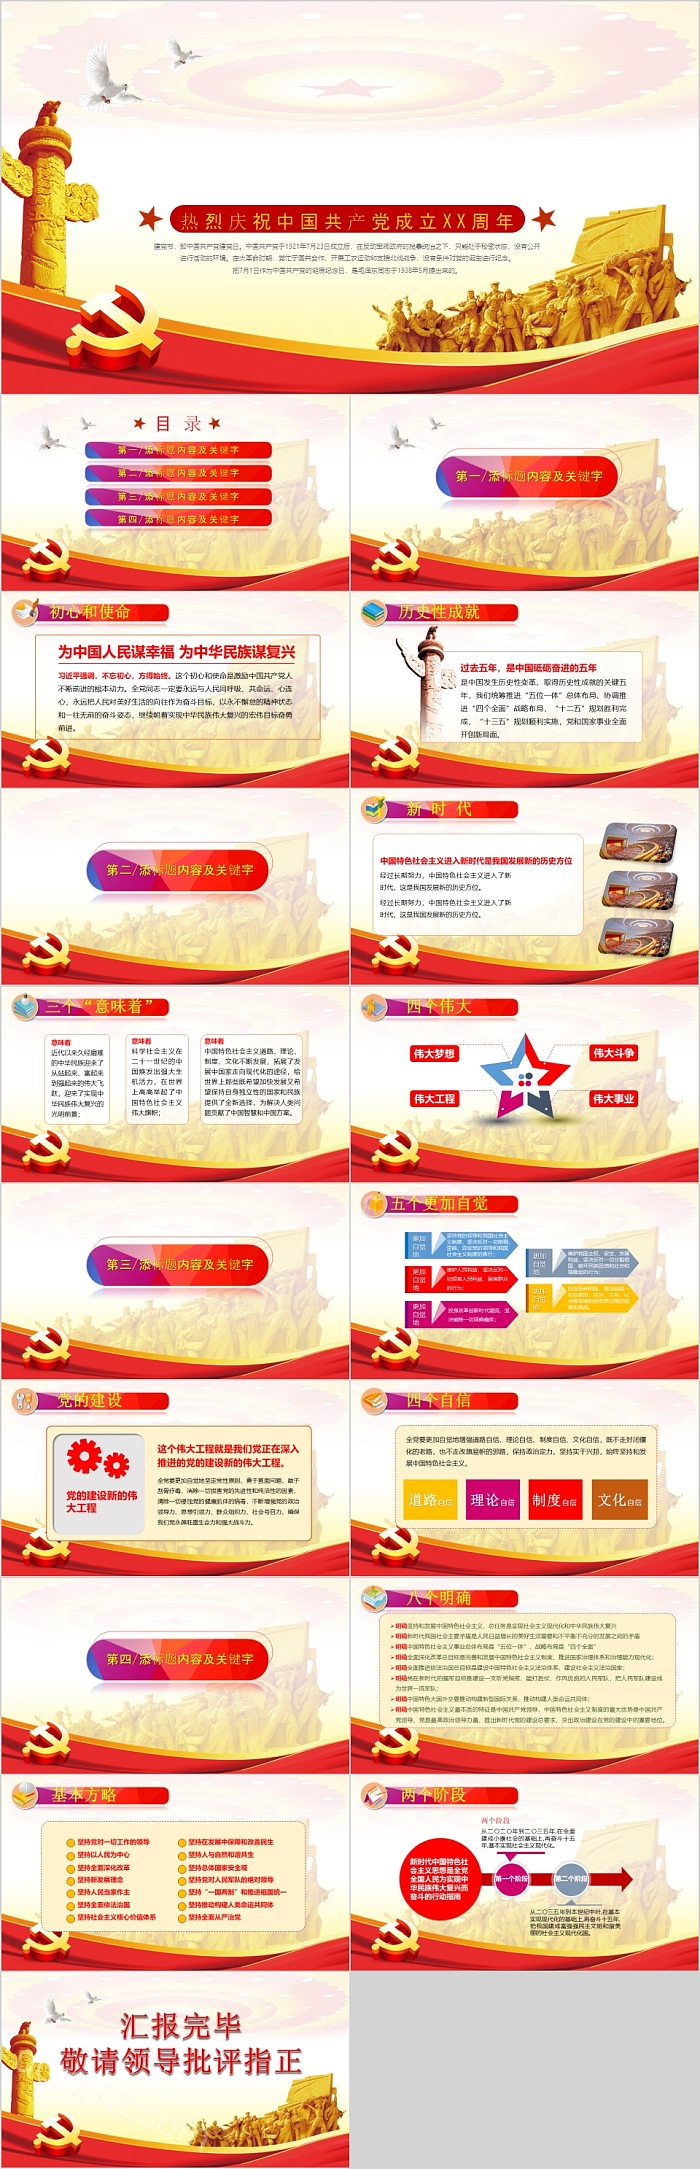 创意热烈庆祝中国共产党成立XX周年